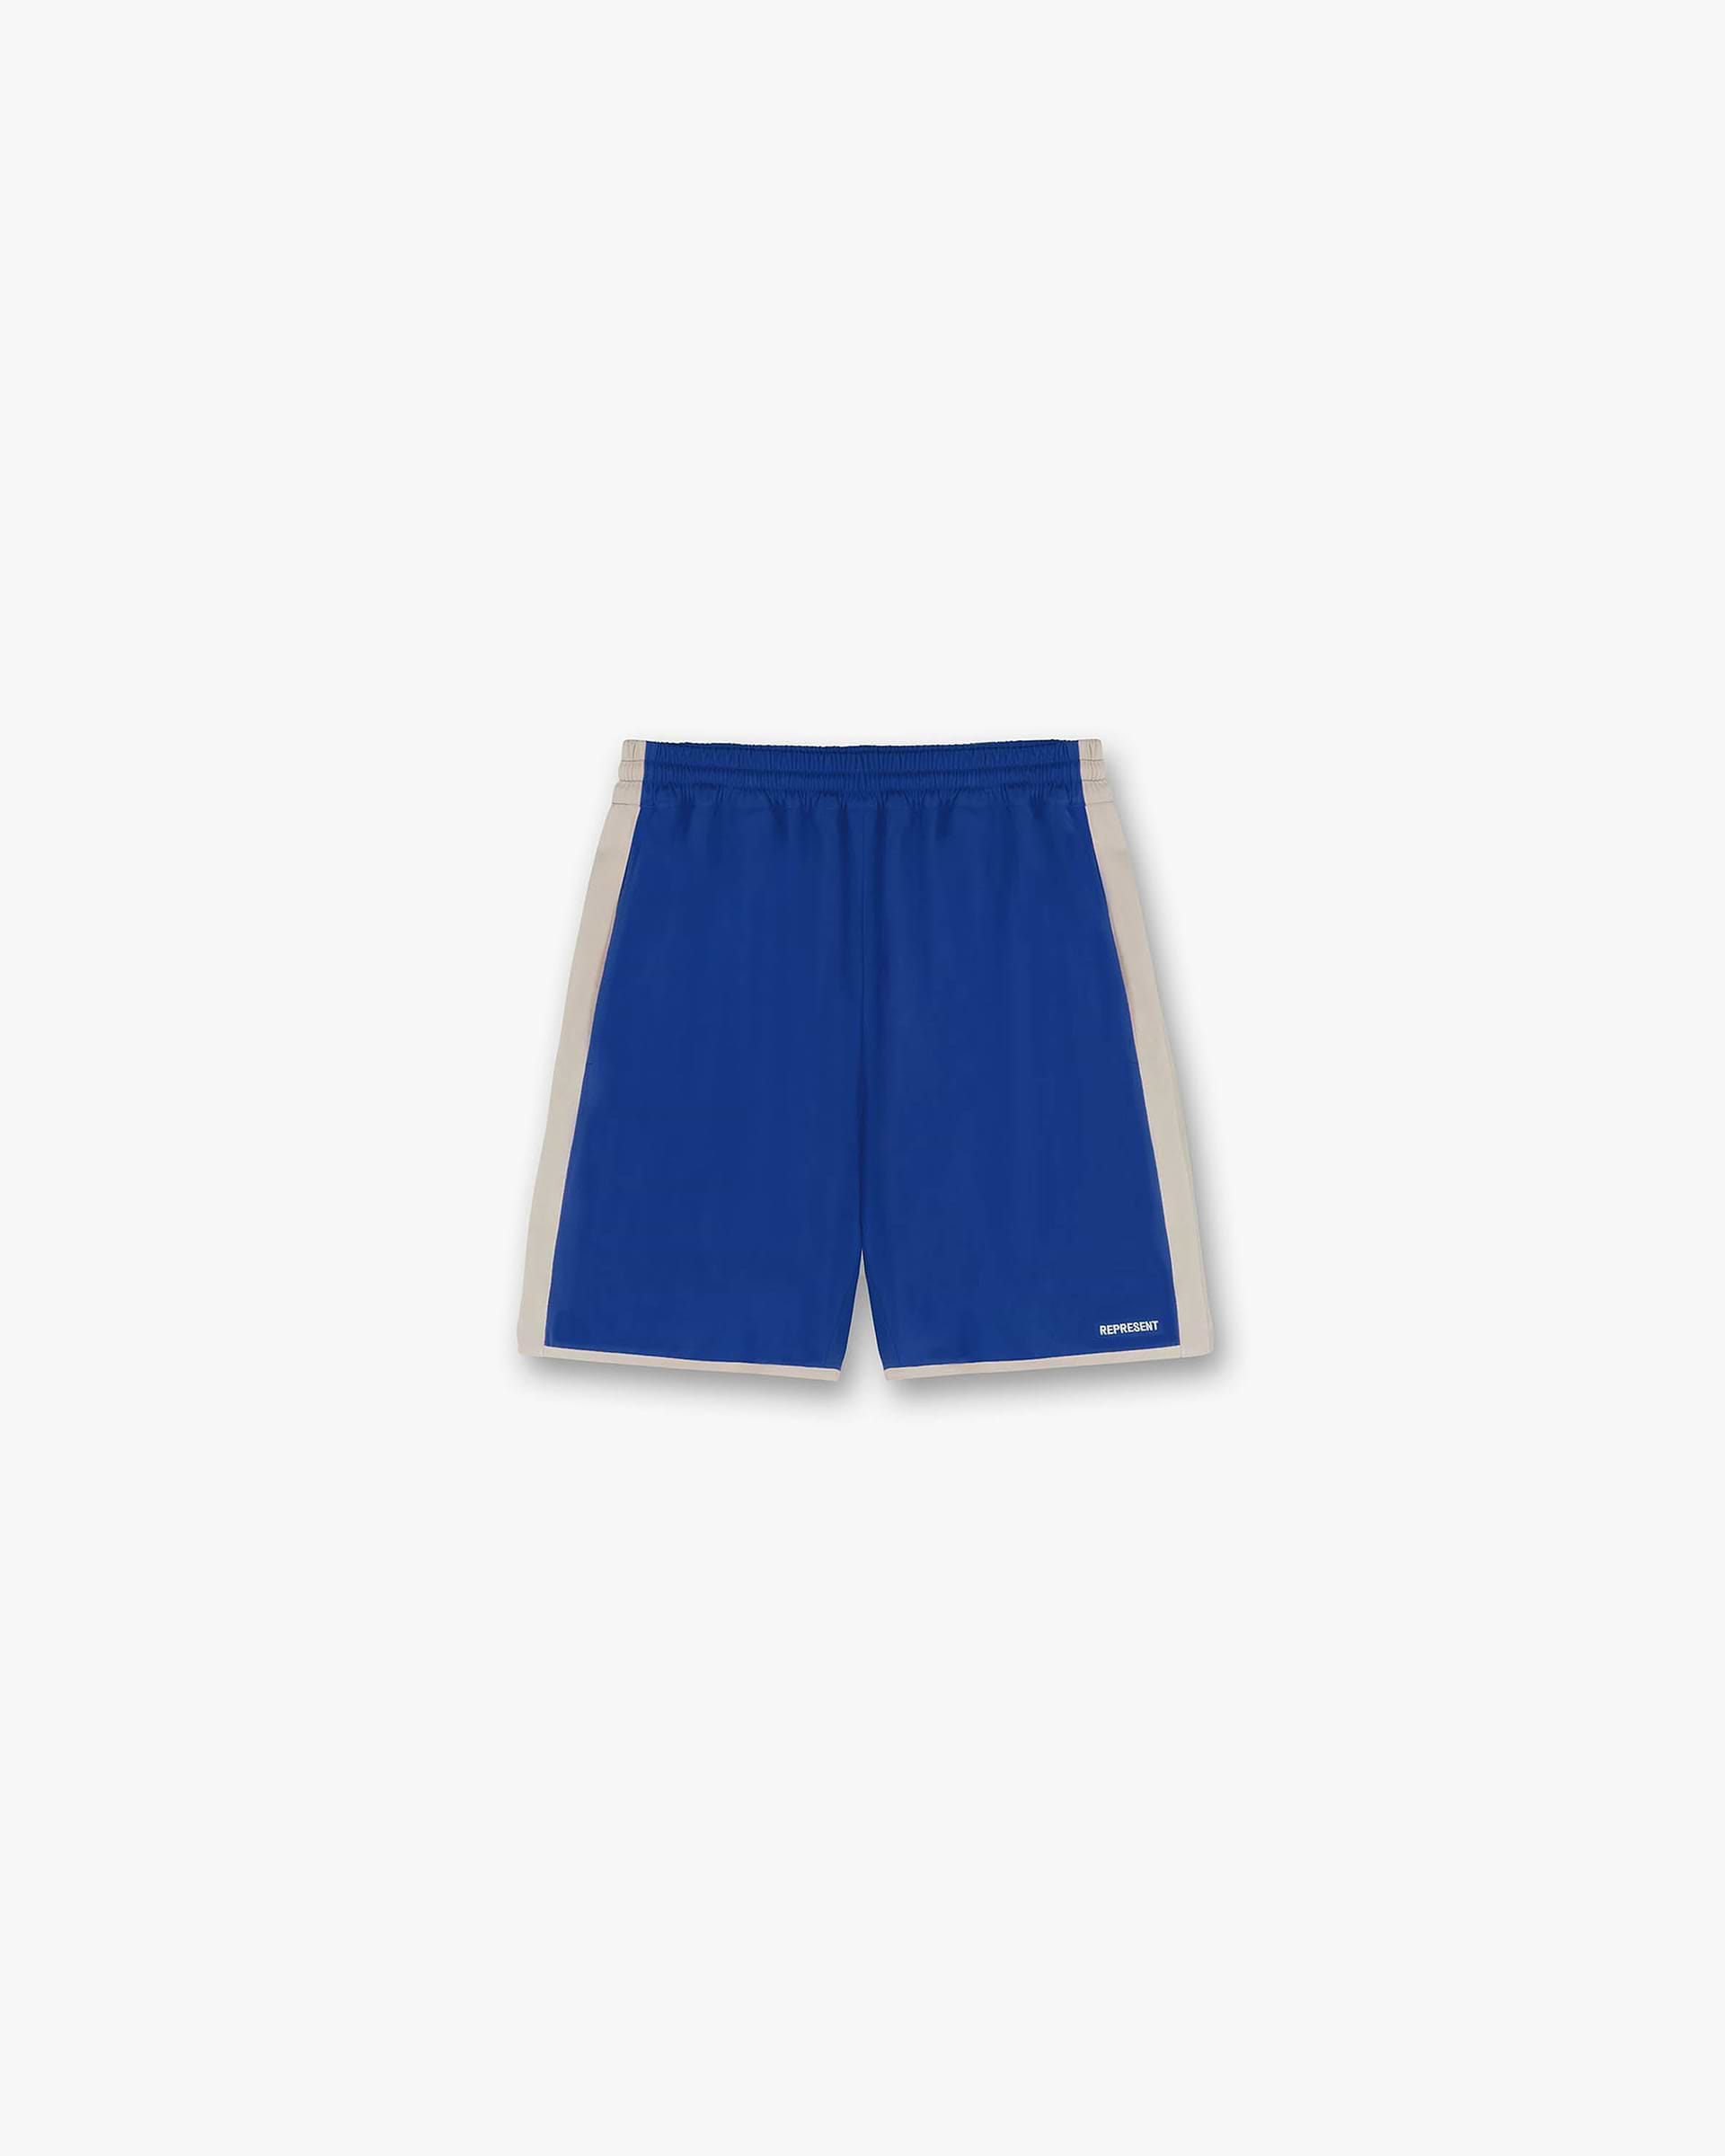 Souvenir Shorts | Cobalt Shorts SS23 | Represent Clo